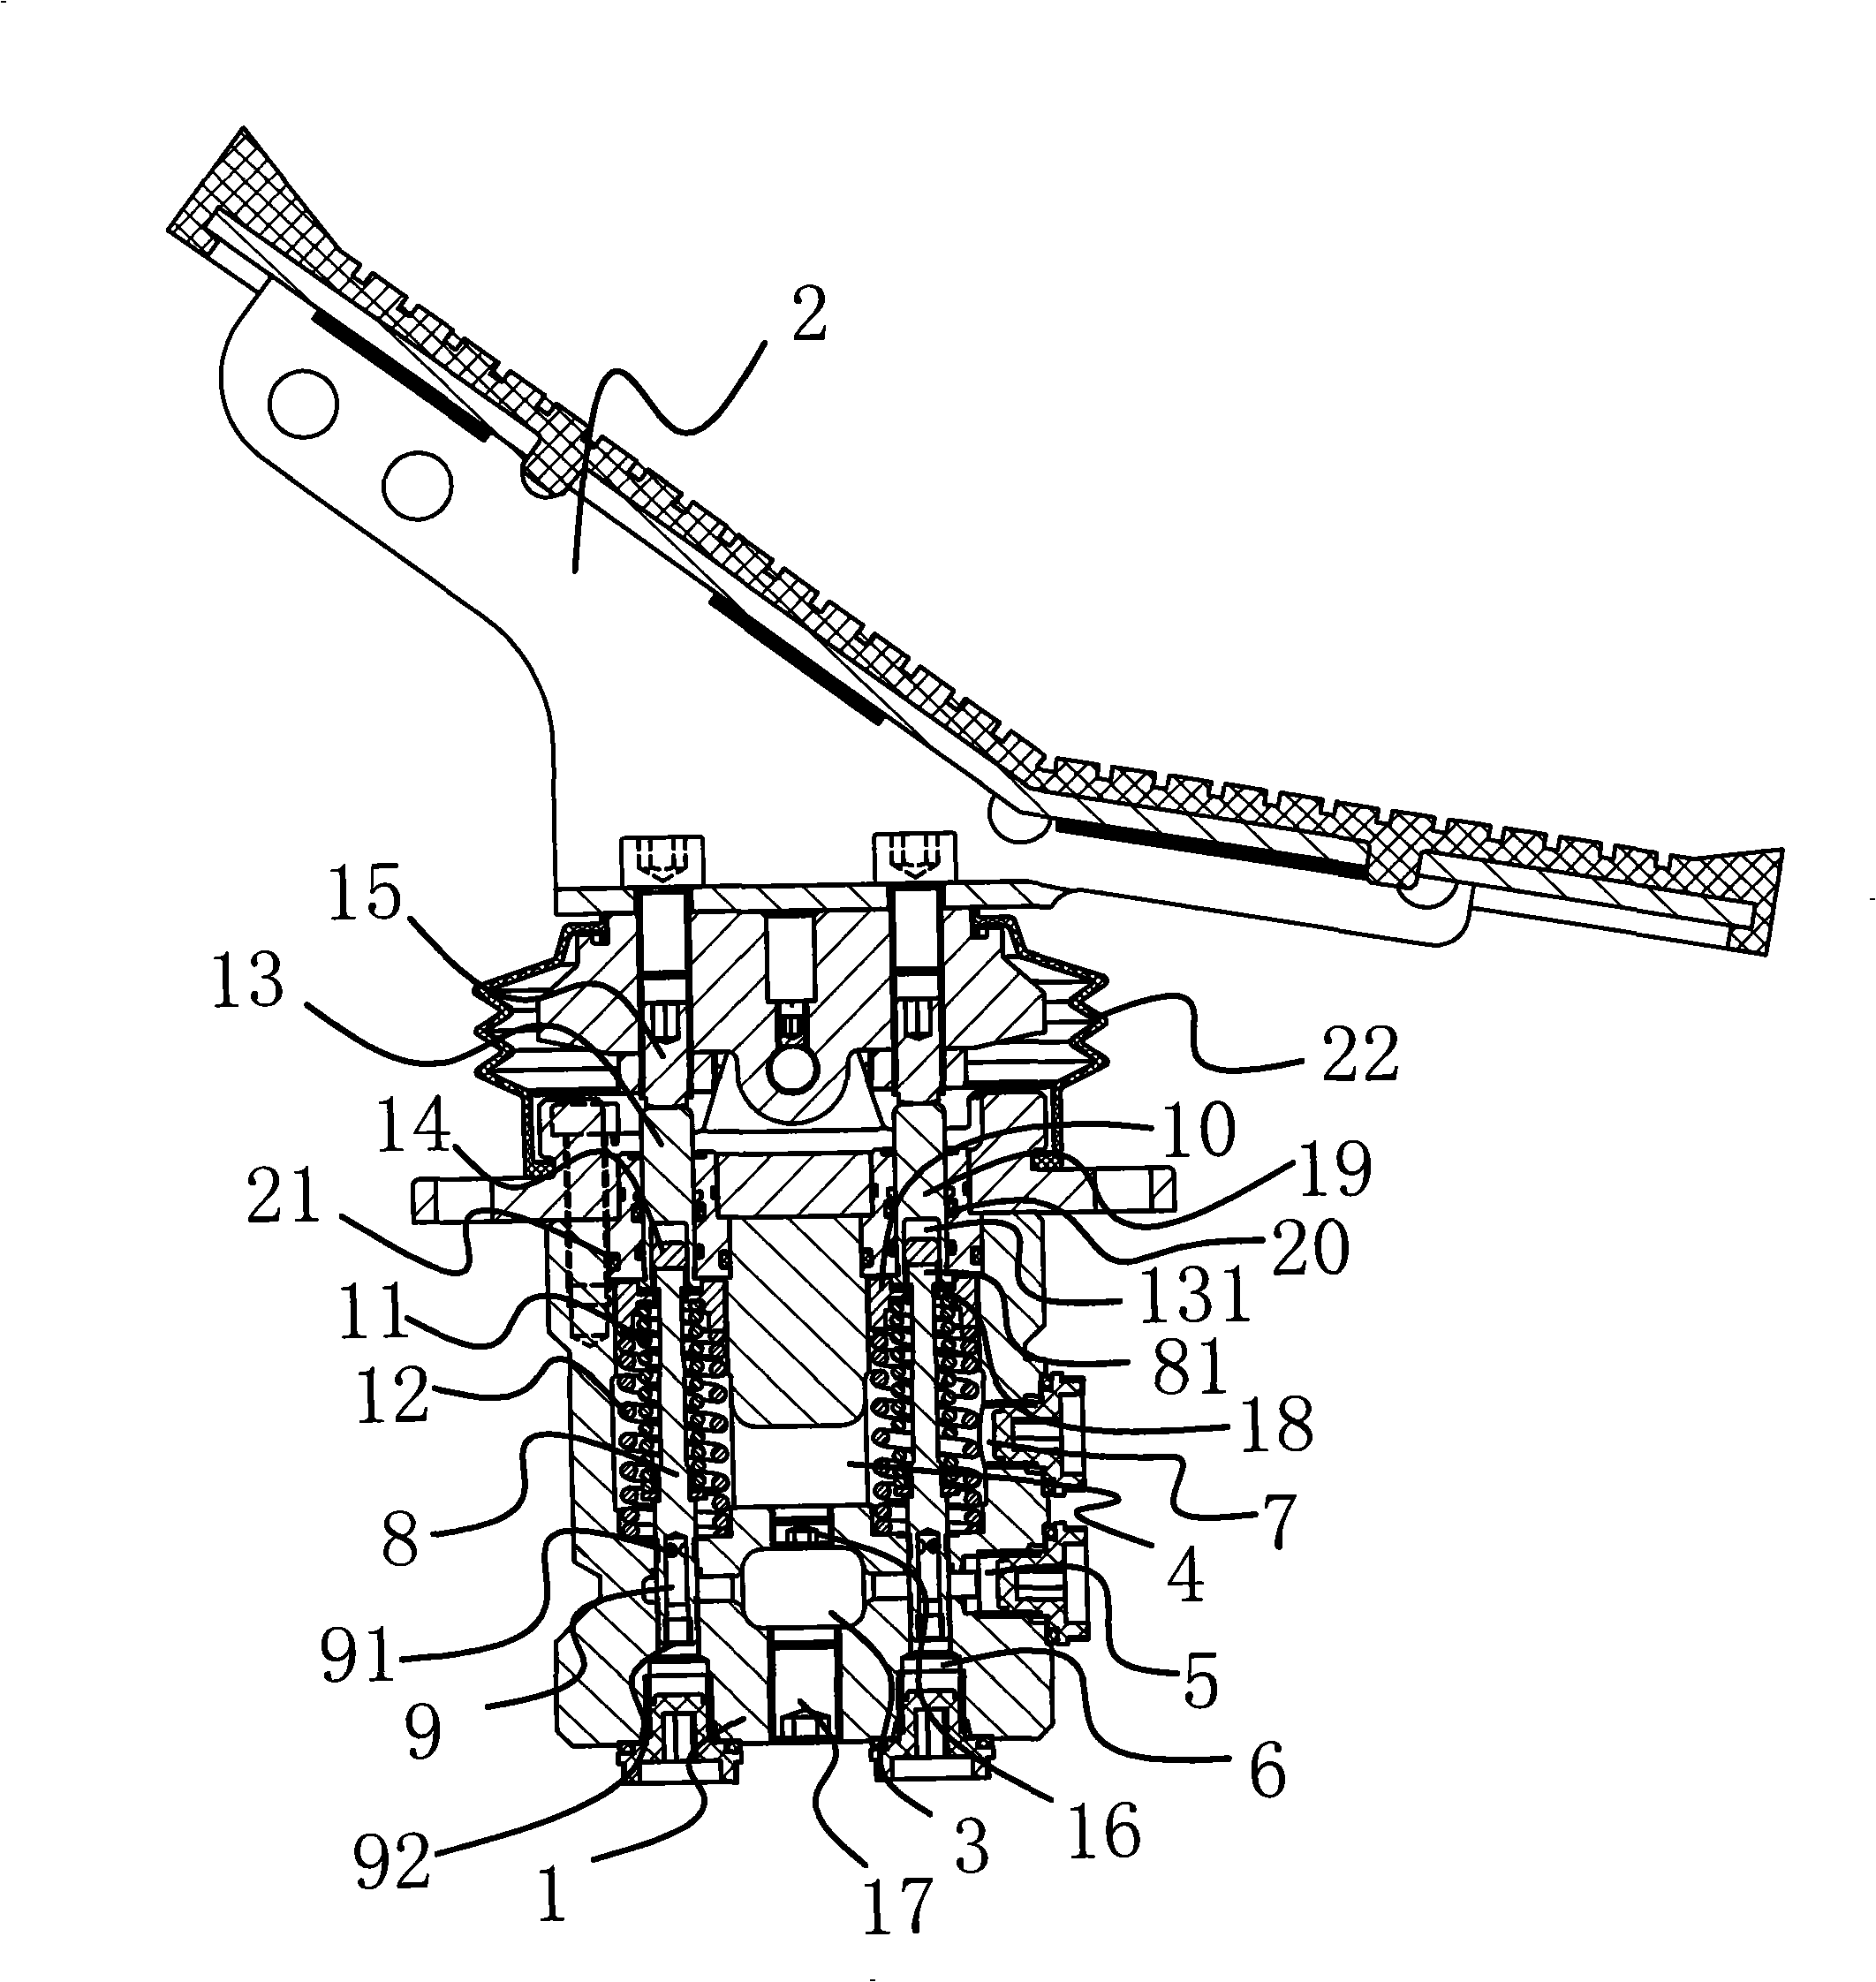 Feet pilot valve